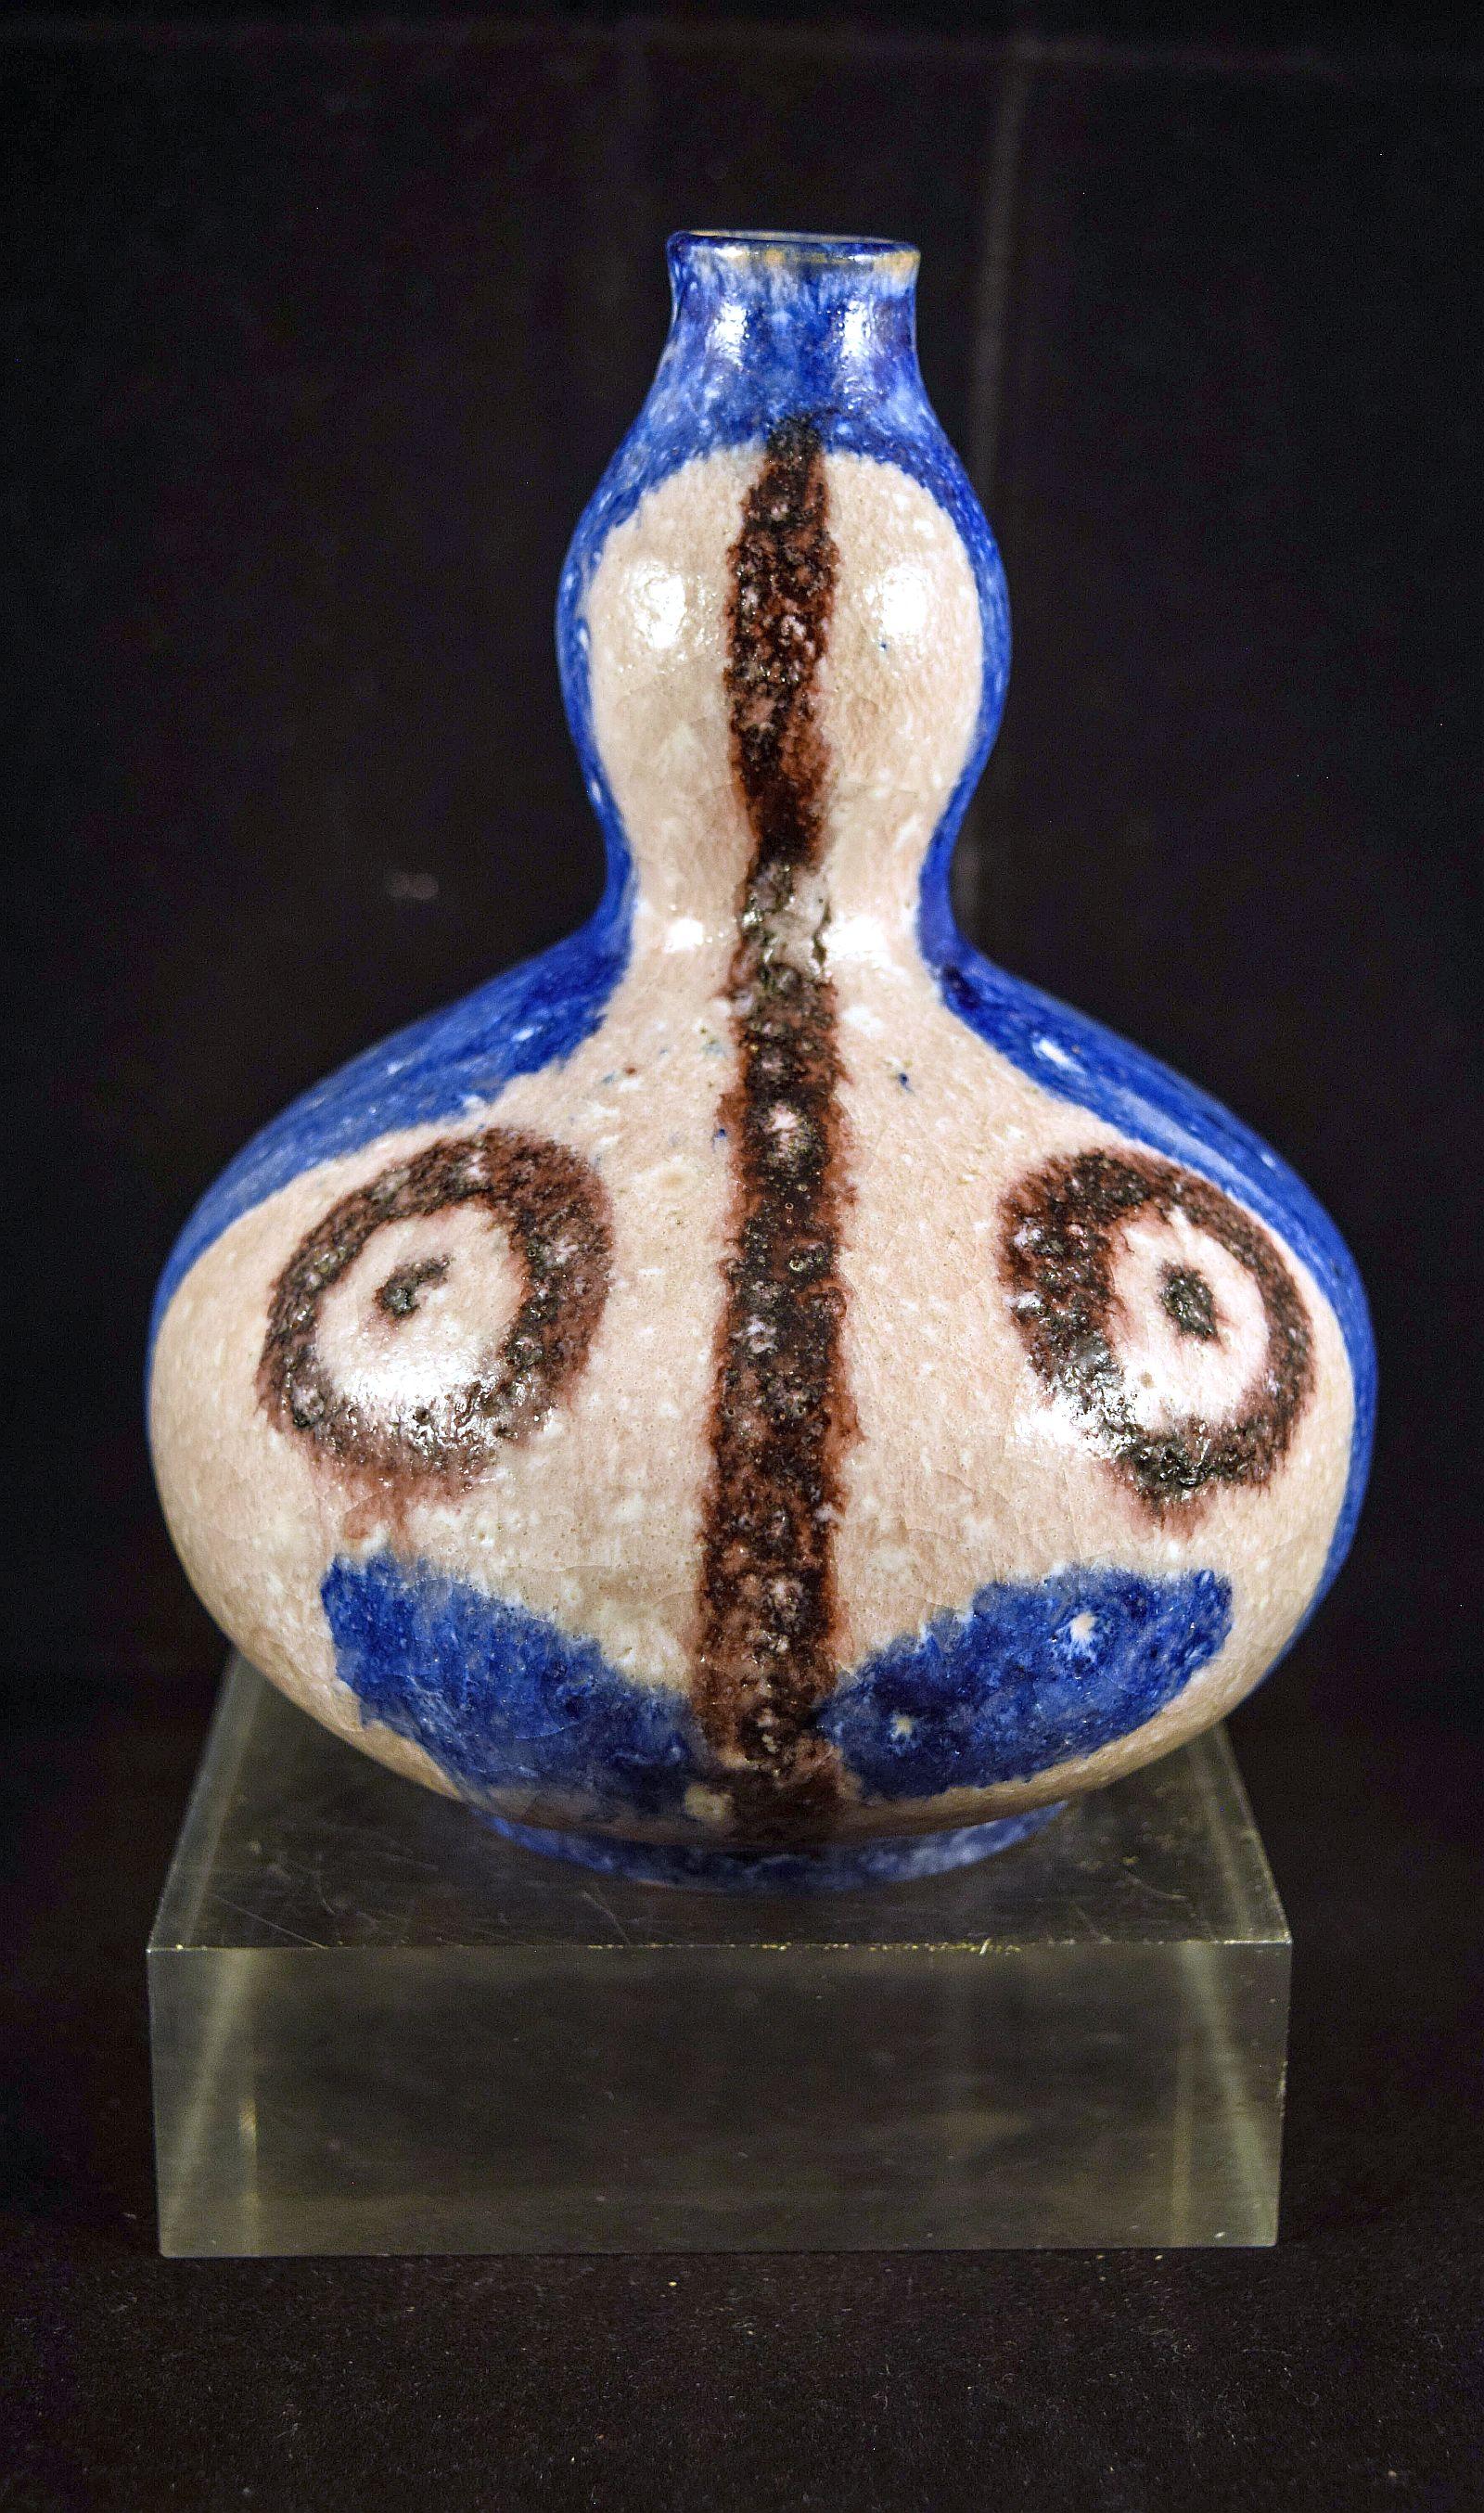 Guido Gambone Außergewöhnliche Vase
In erstaunlichem Zustand,
vollständig signiert mit Eselszeichen 
eiförmige Form  knubbeliger Hals, bemalt mit einem geometrischen Gesicht in
 Aubergine und Pilz auf blauem Grund, perfekter Zustand.
Eine sehr